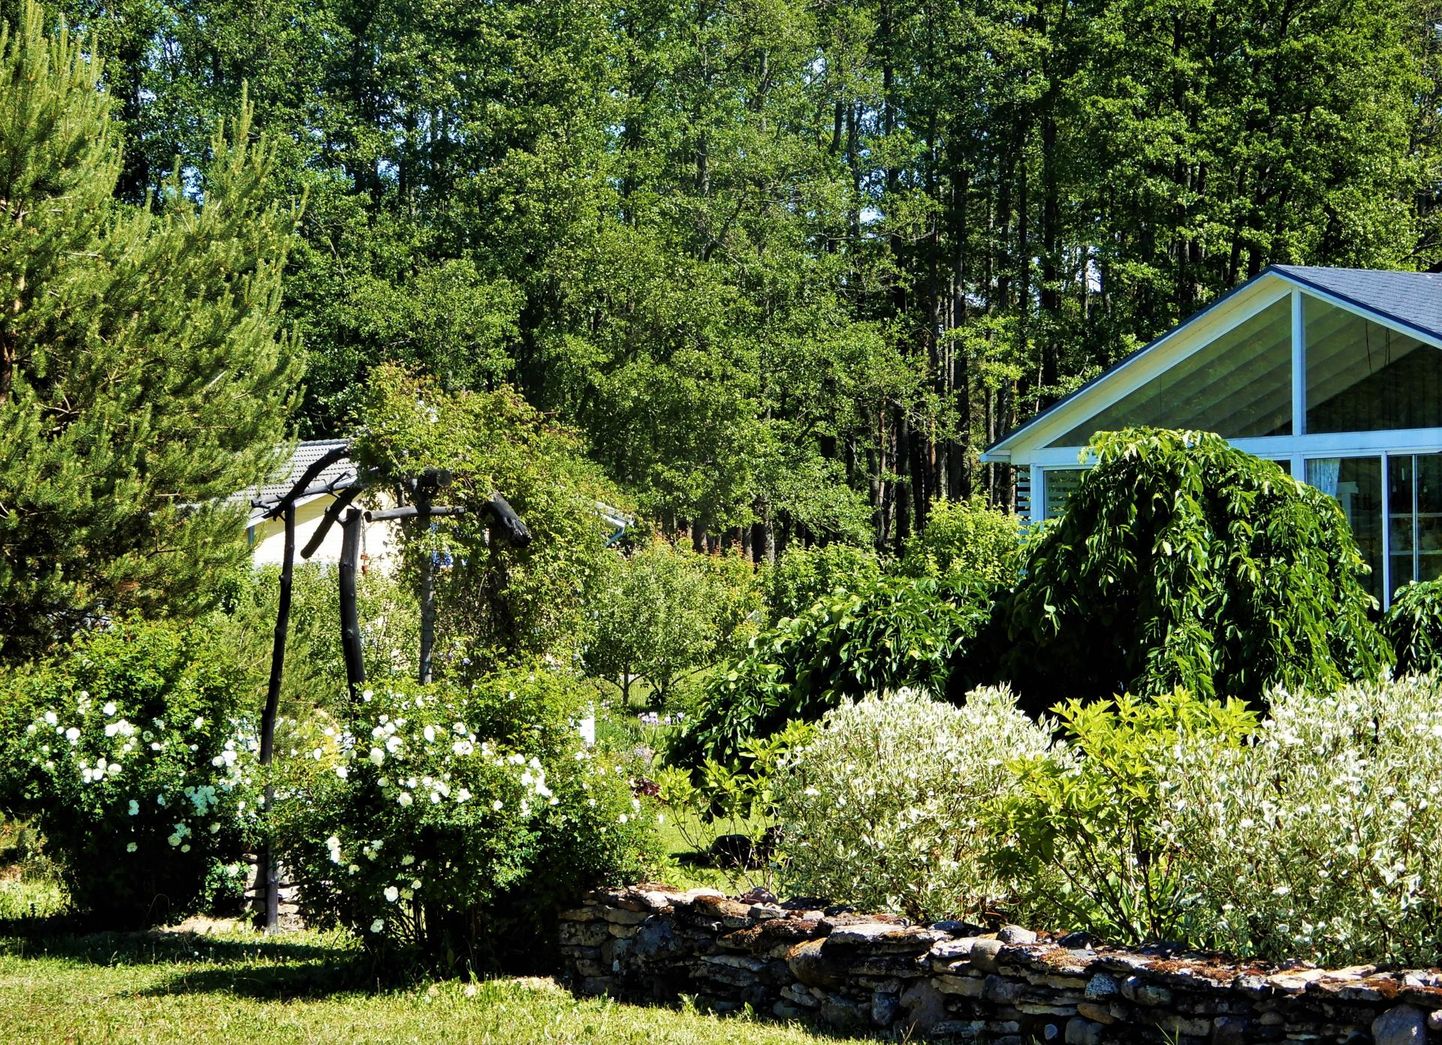 Vabakujuline hekk, mis koosneb siberi kontpuudest ja aed-hortensiatest. Väravat raamivad näärelehised kibuvitsad. Hiljem kasvab kontpuu Gülnara Tartese sõnul aedhortensiast kõrgemaks ja tekib ühesuguse rütmiga lainetus.